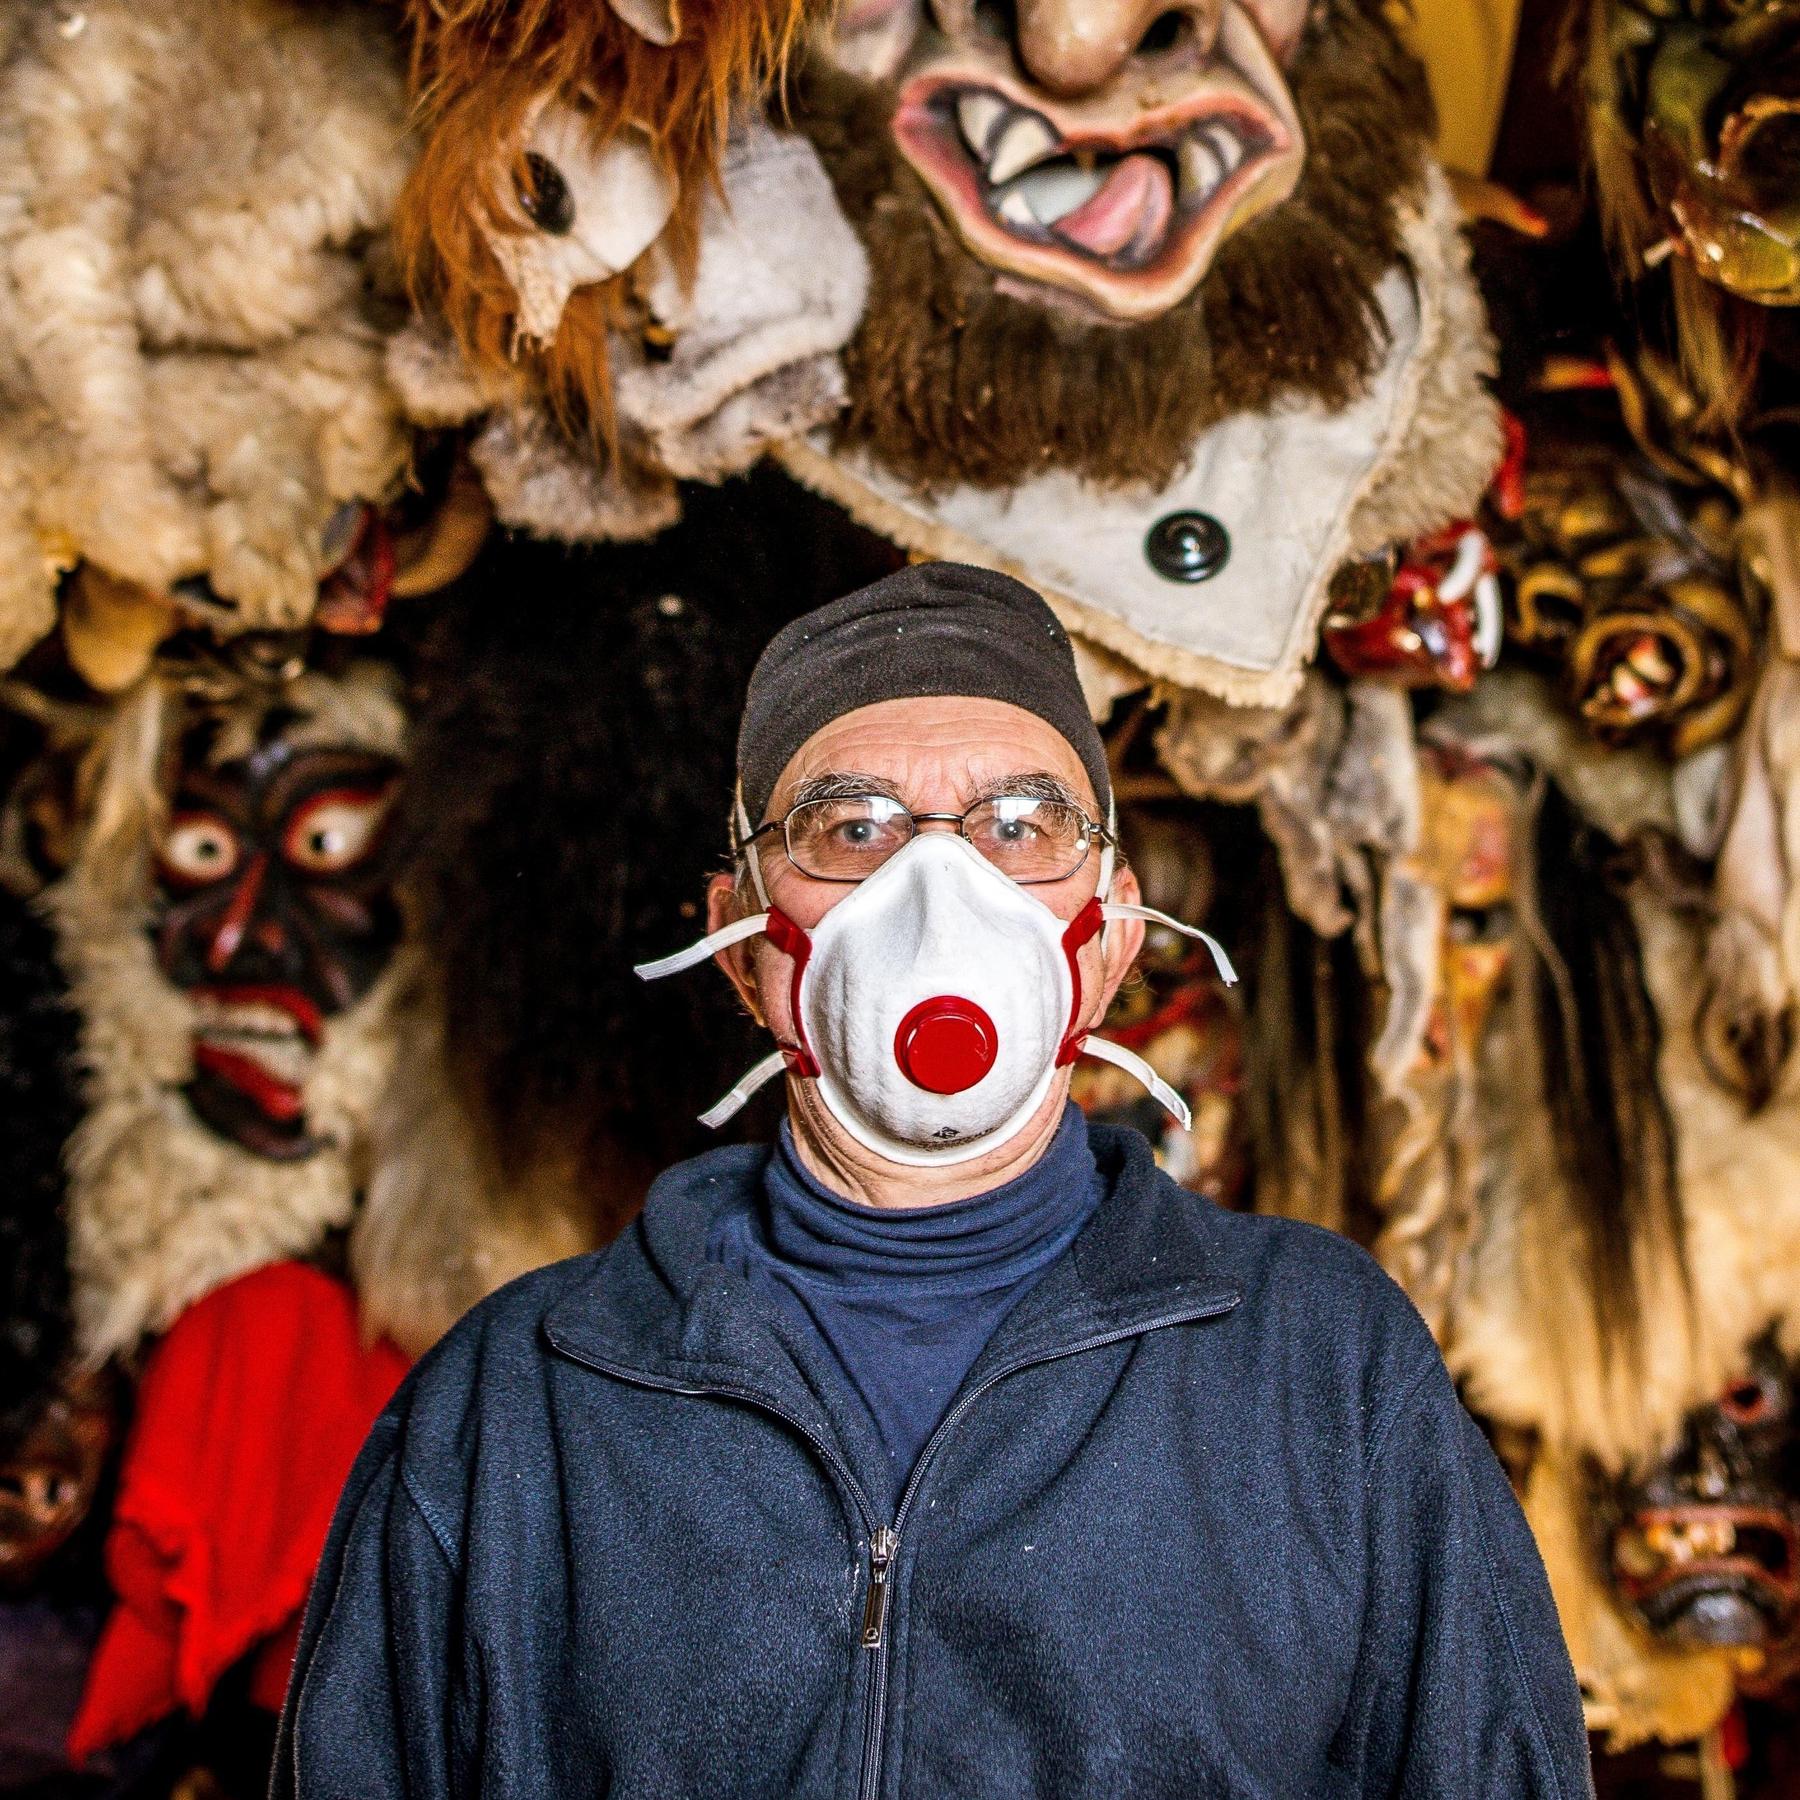 Michael Stöhr vom Maskenmuseum Diedorf: ”Ungefähr 2000 Faschingsmasken davon, ja auch eine ganze Menge”